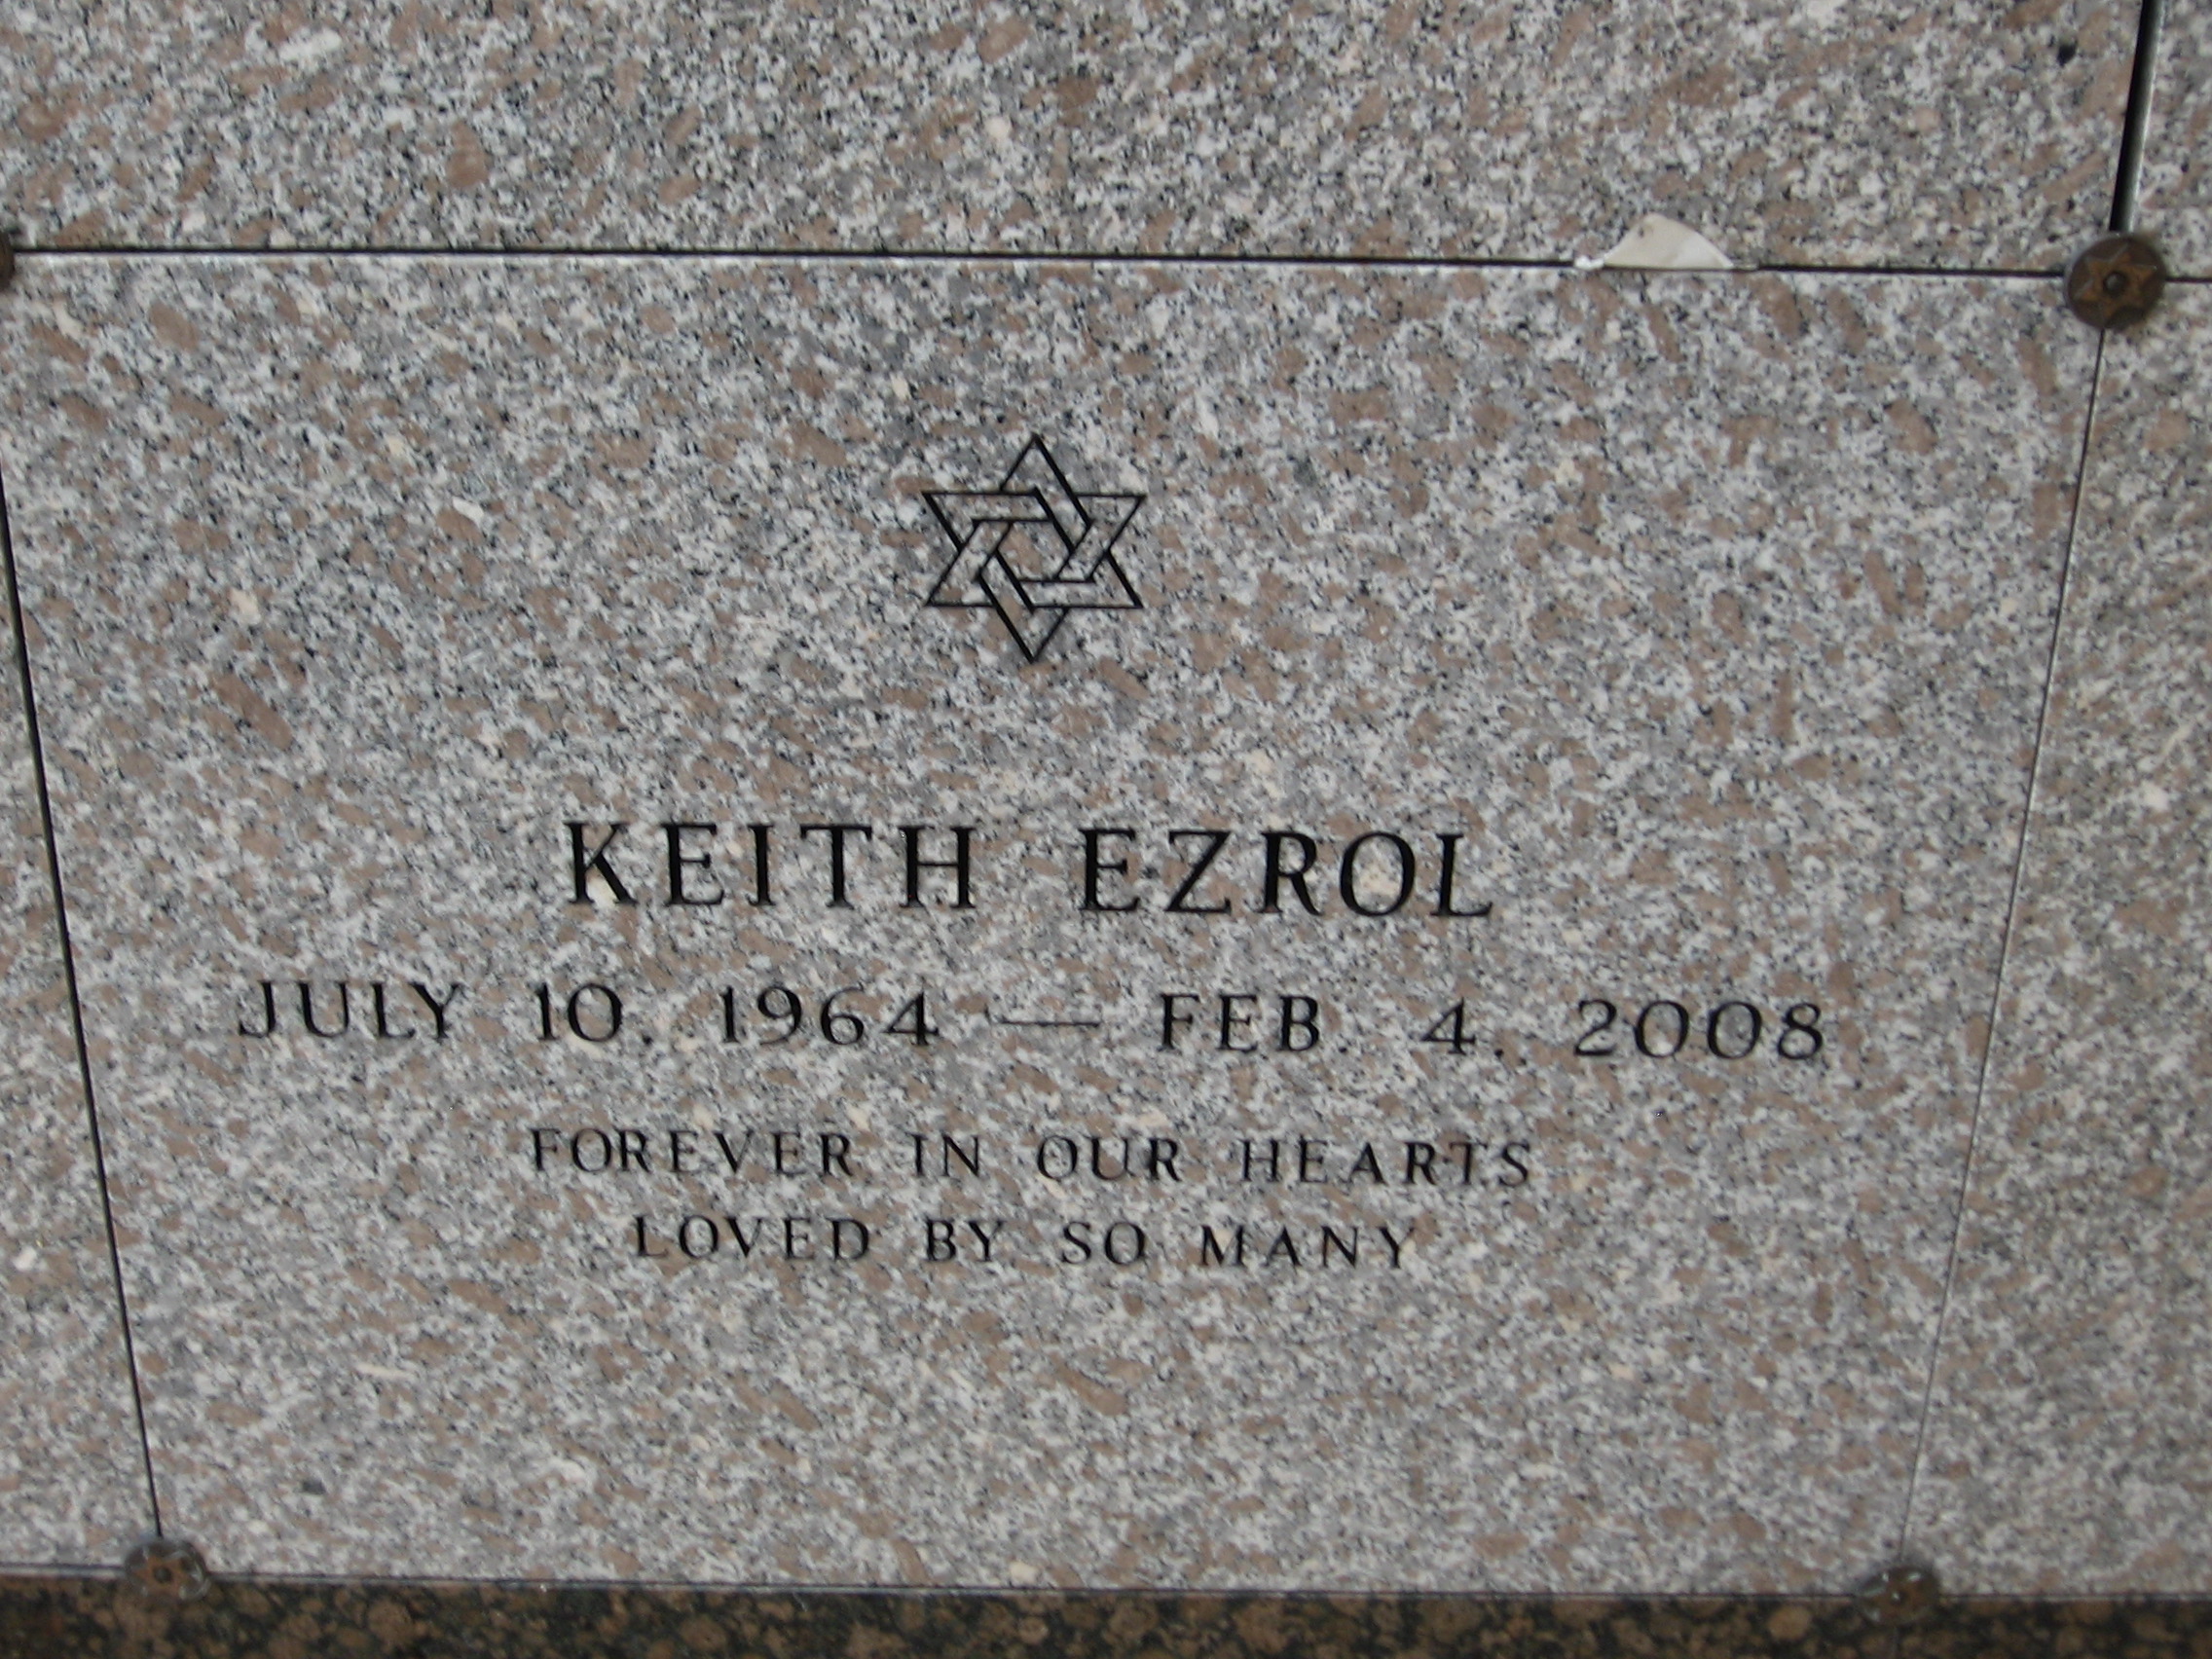 Keith Ezrol